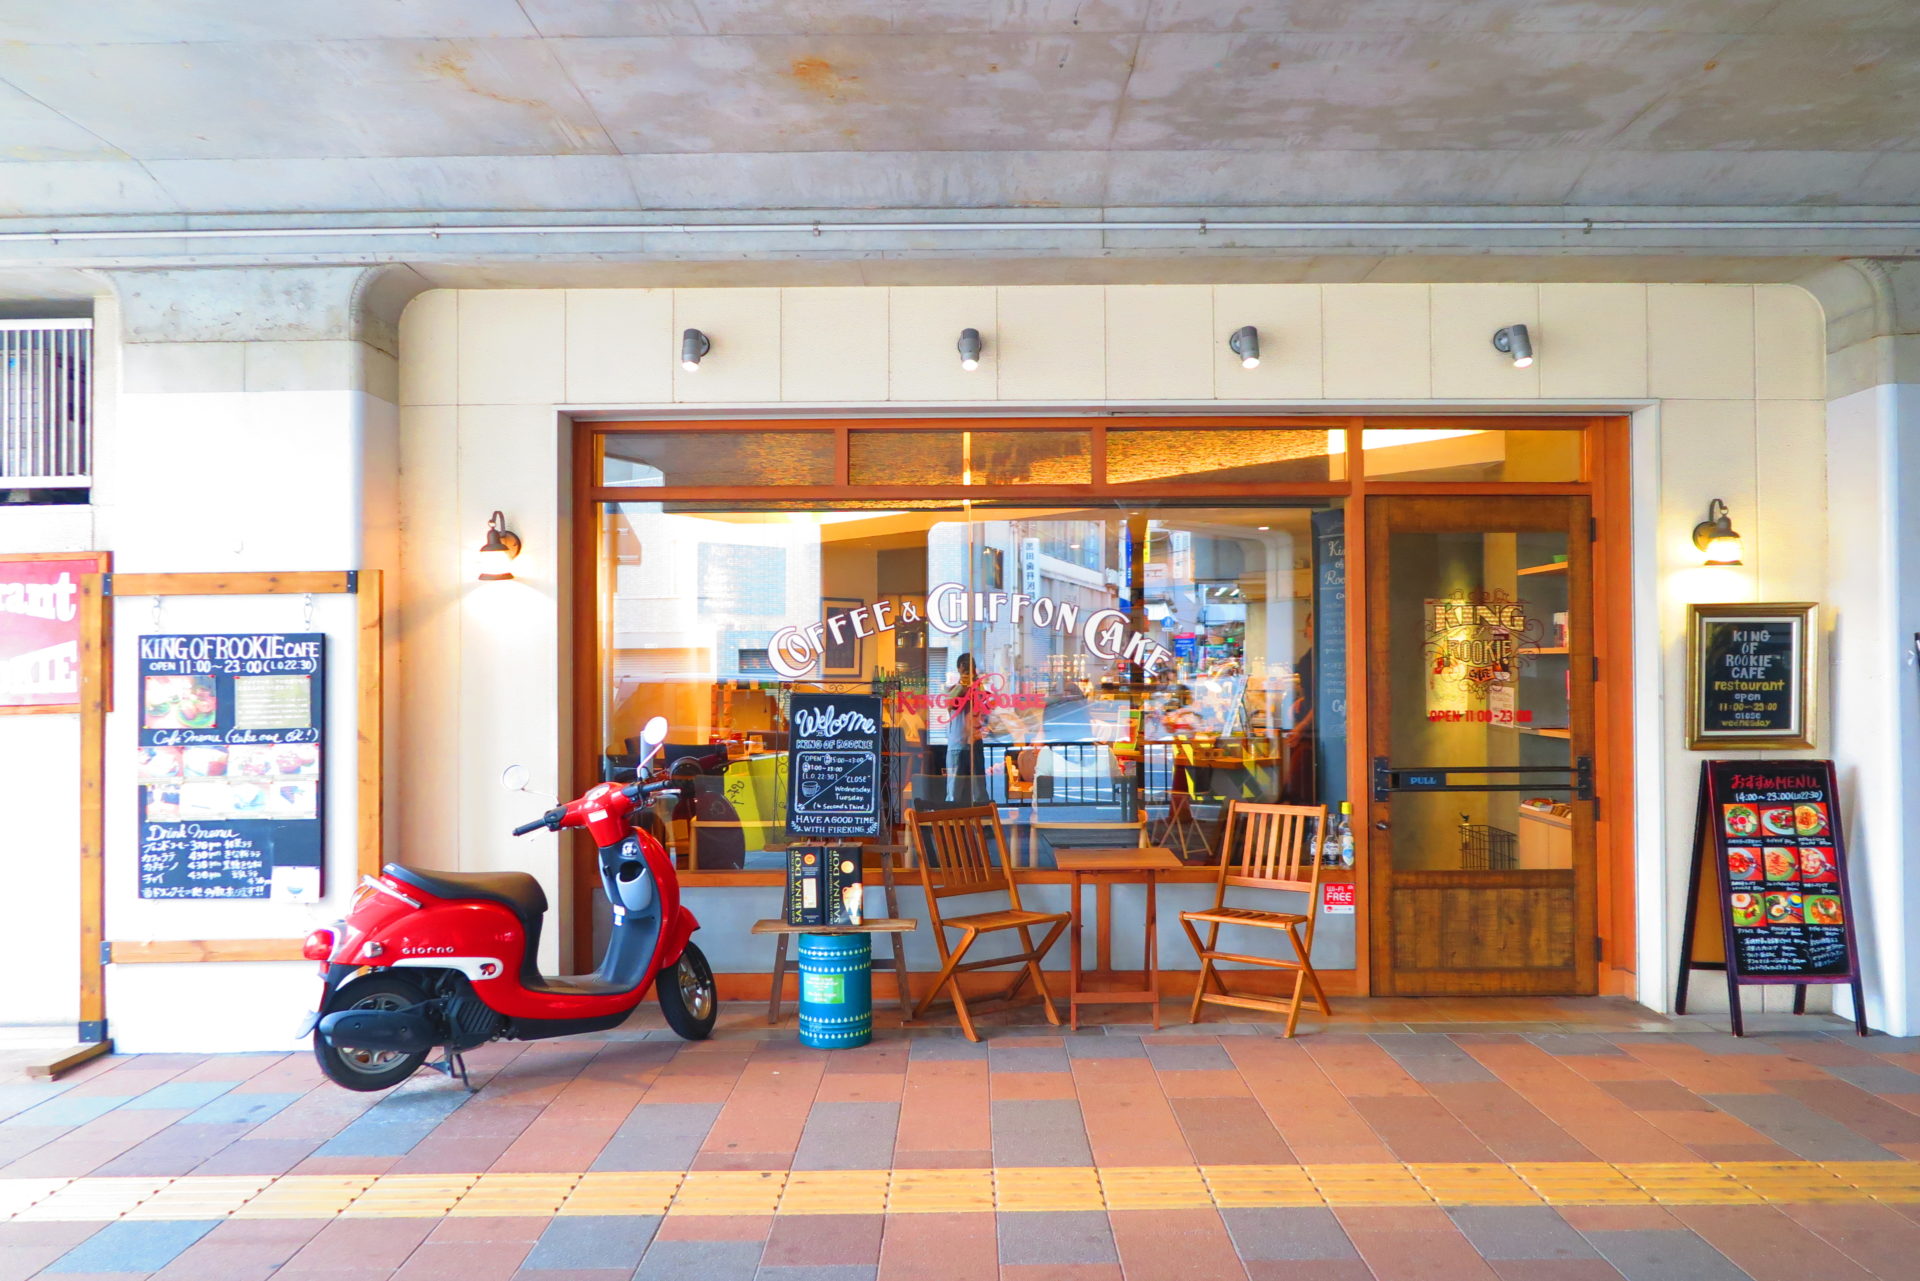 山電姫路駅高架下のキングオブルーキーカフェが閉店するみたい 姫路の種